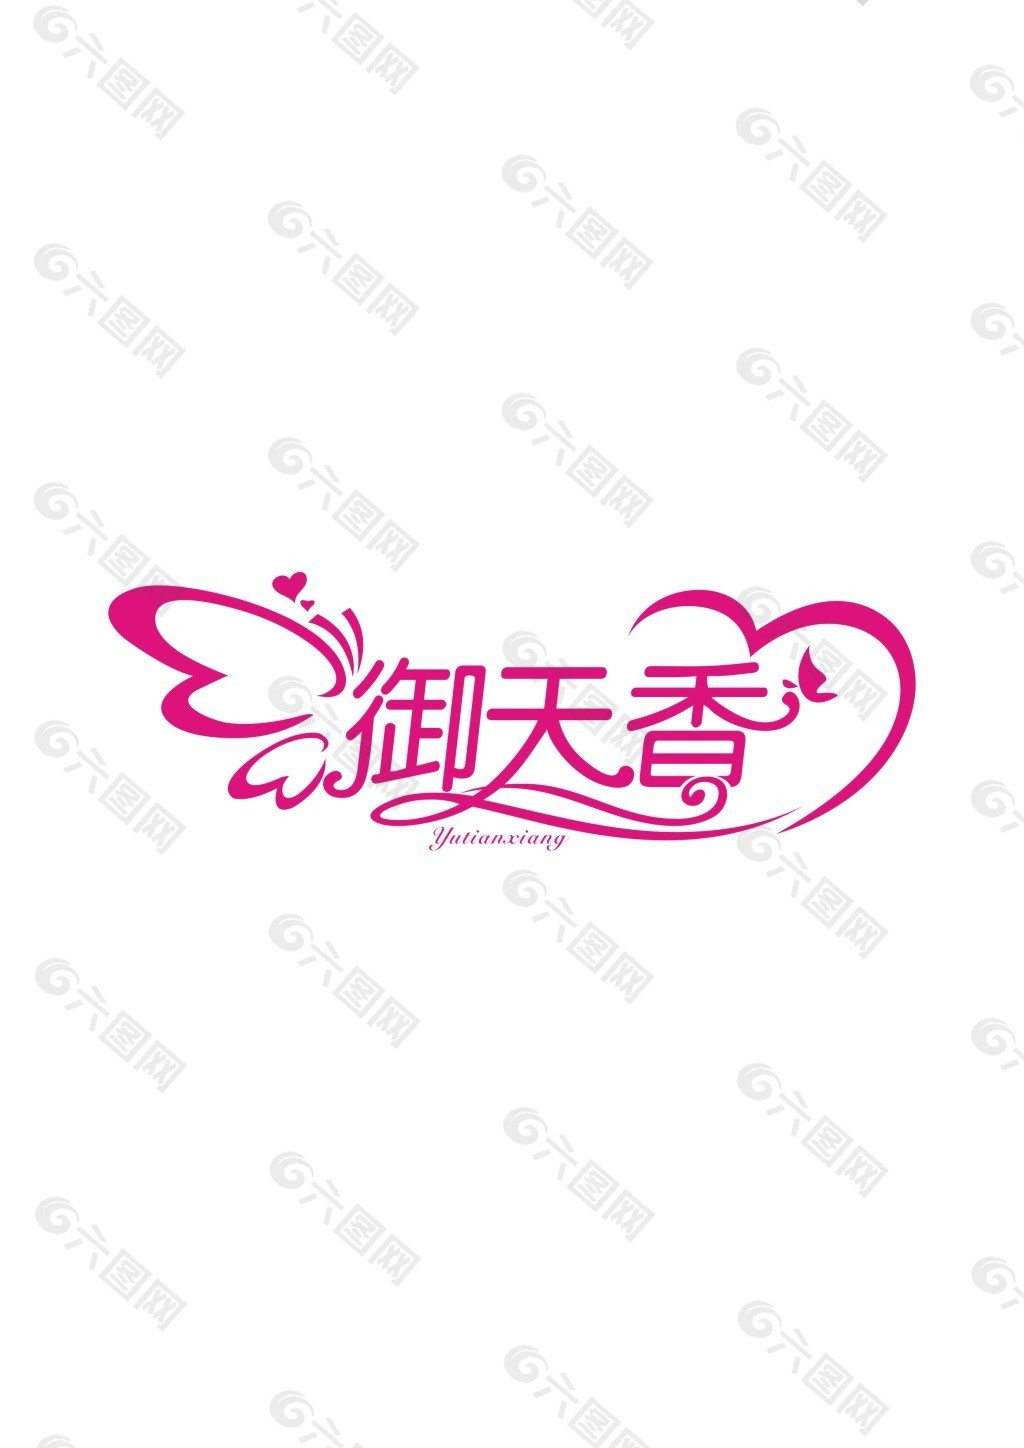 婚庆logo艺术字设计图片